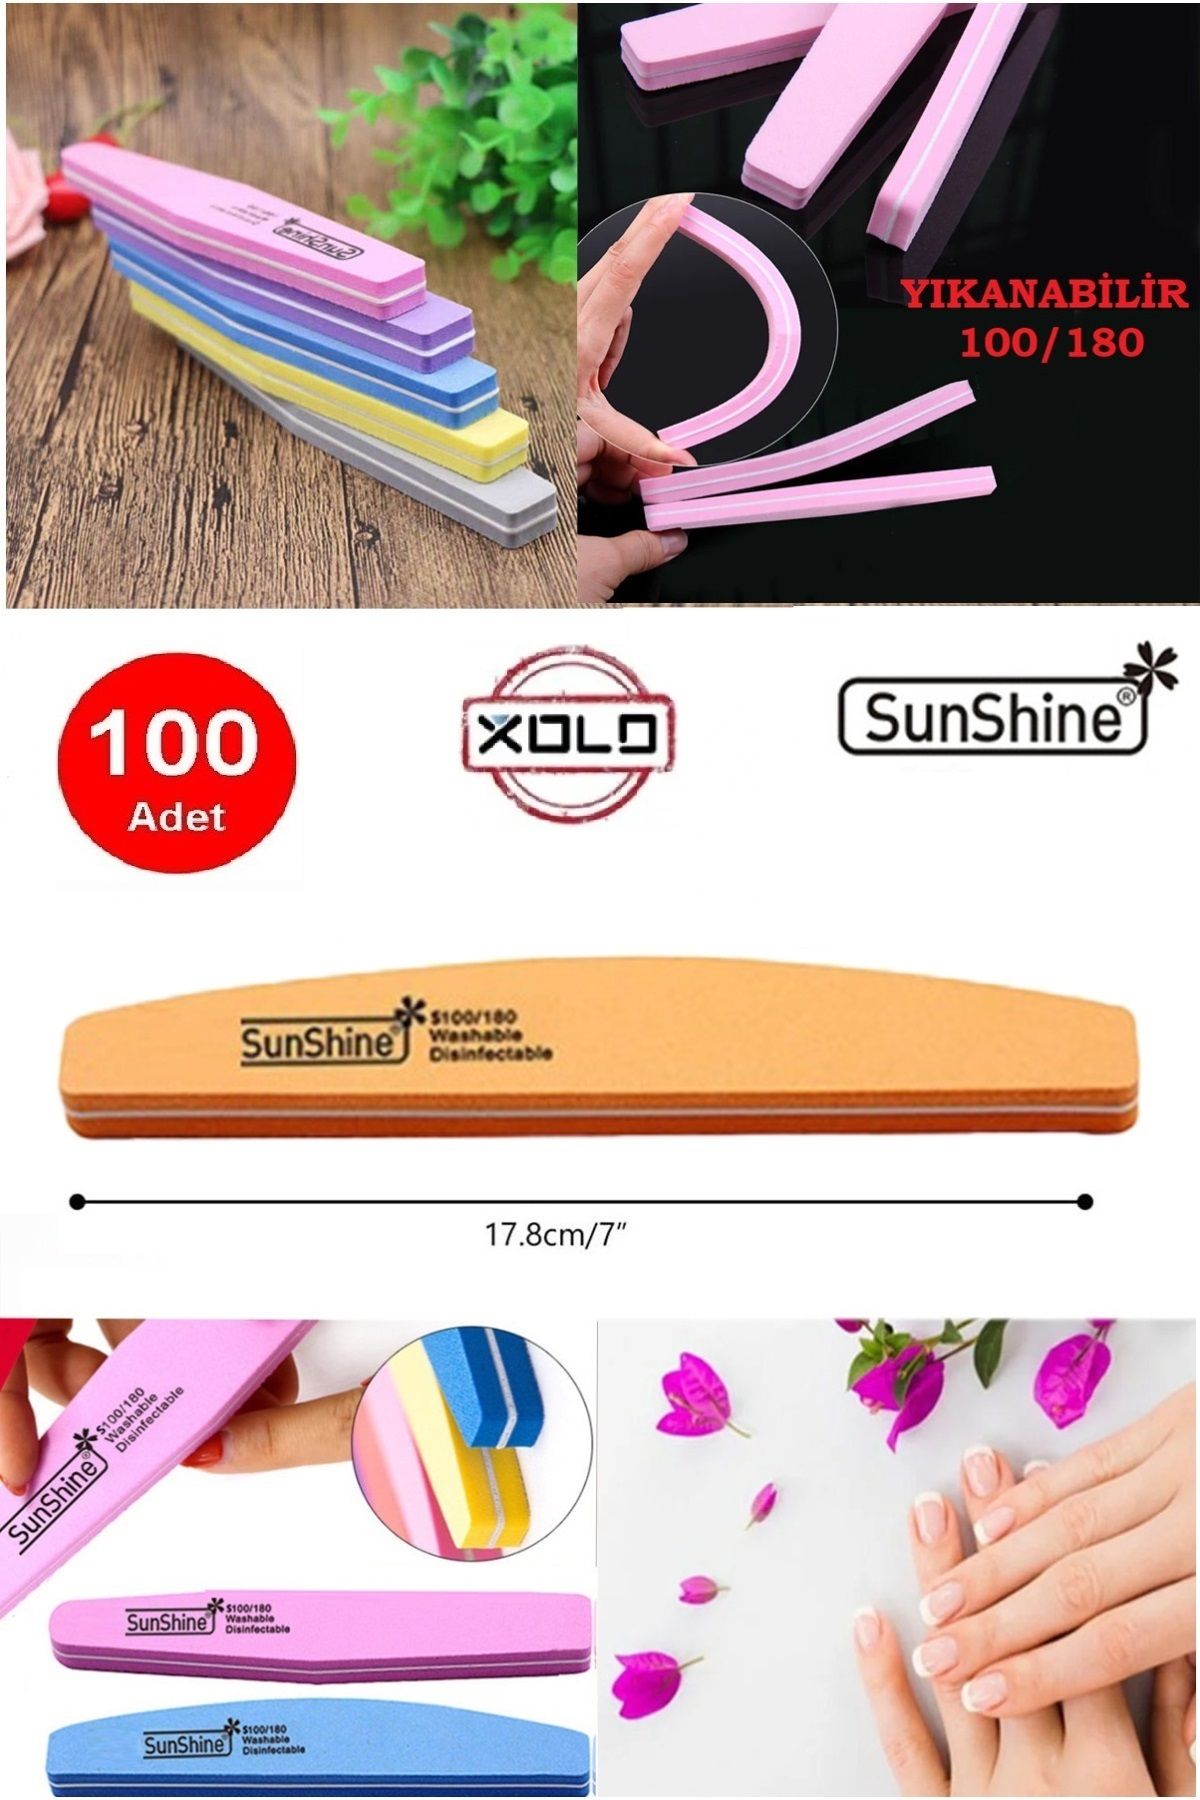 Xolo 100 Adet Turuncu 100/180 Doğal Veya Protez Tırnak Törpüsü Çift Taraflı Yıkanabilir SunShine